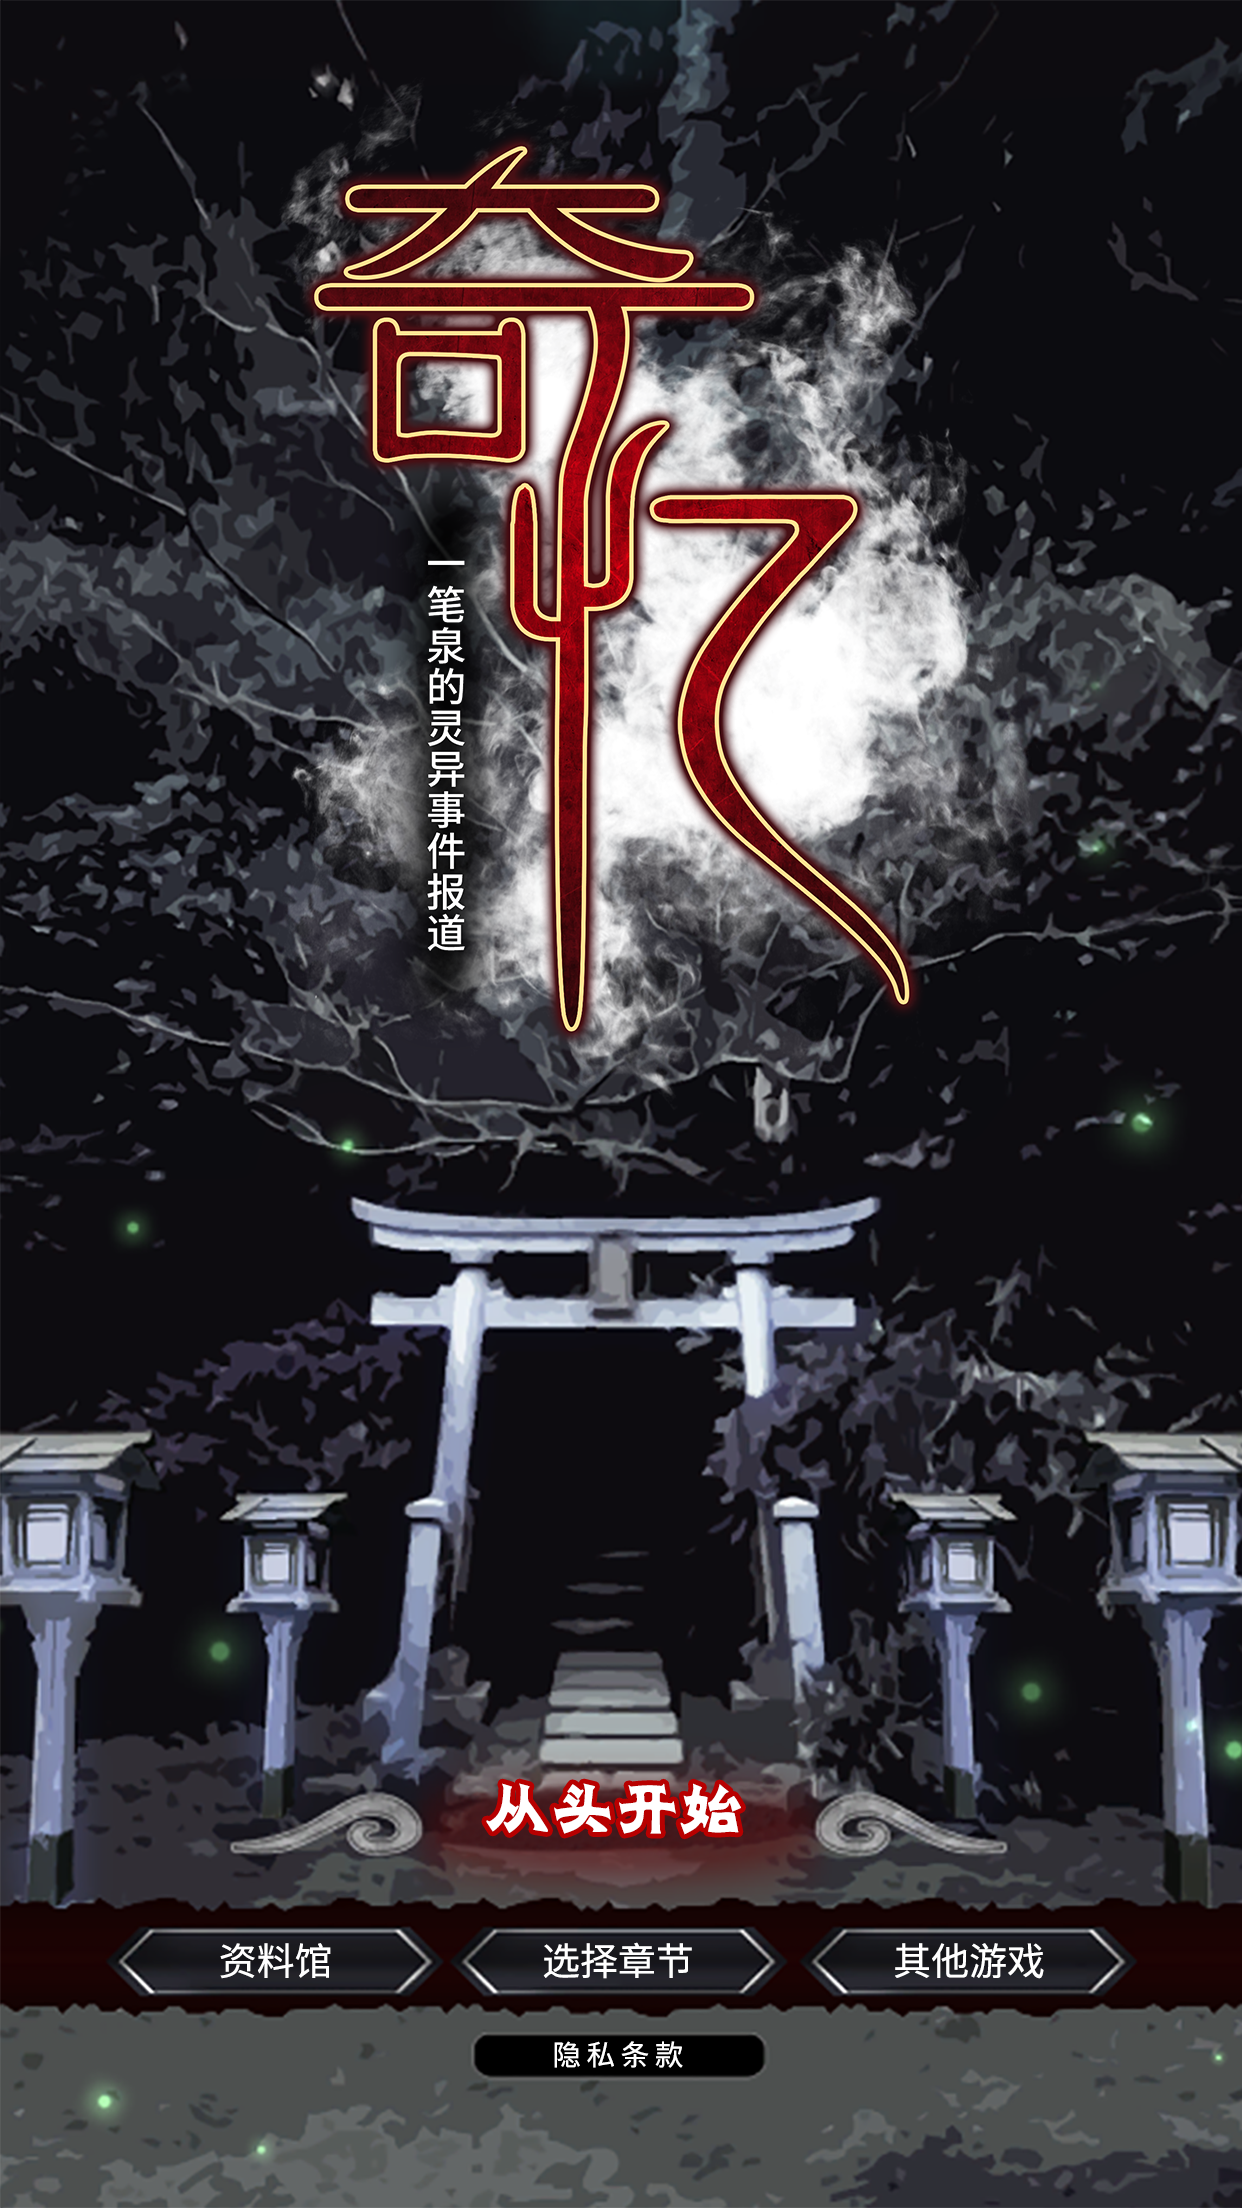 Screenshot 1 of Seltsame Erinnerungen: Ein Bericht über das übernatürliche Ereignis von Yiyiquan 